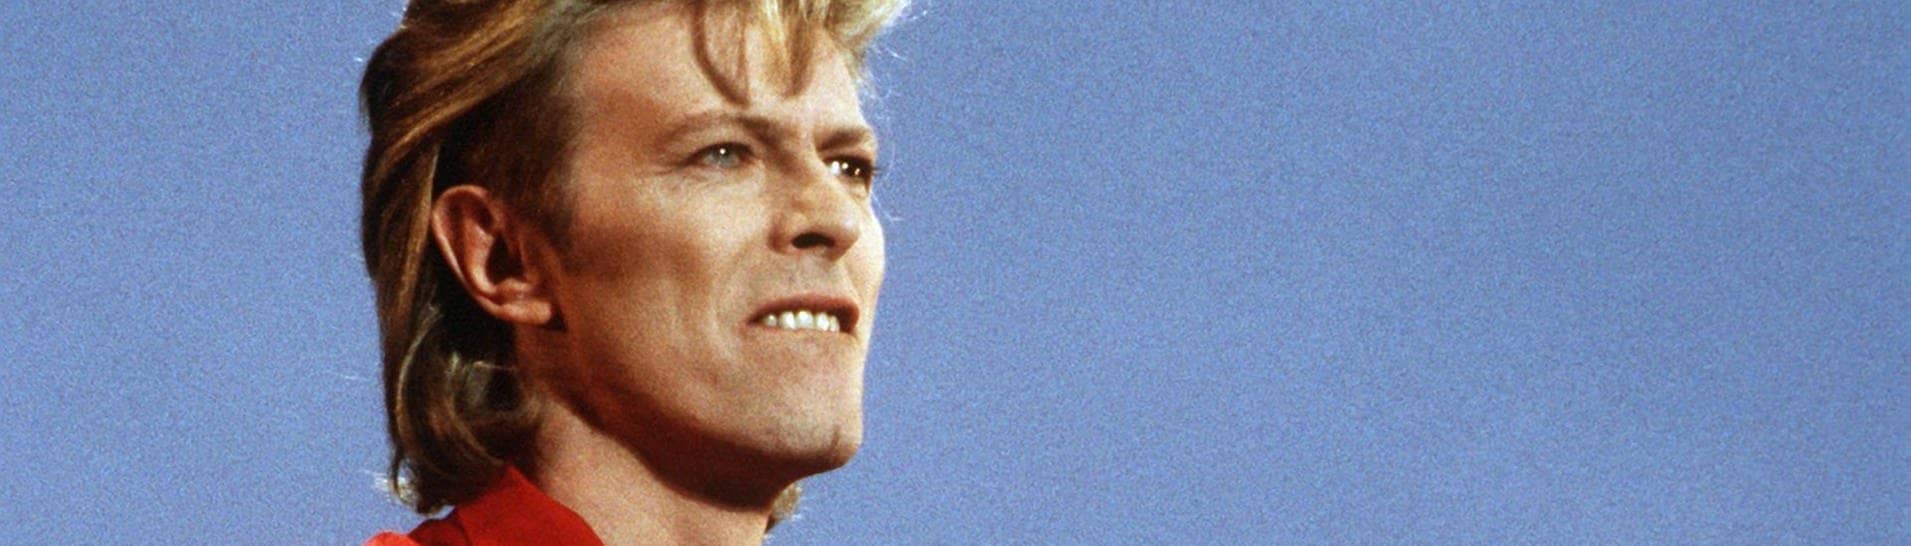 David Bowie im Jahr 1987